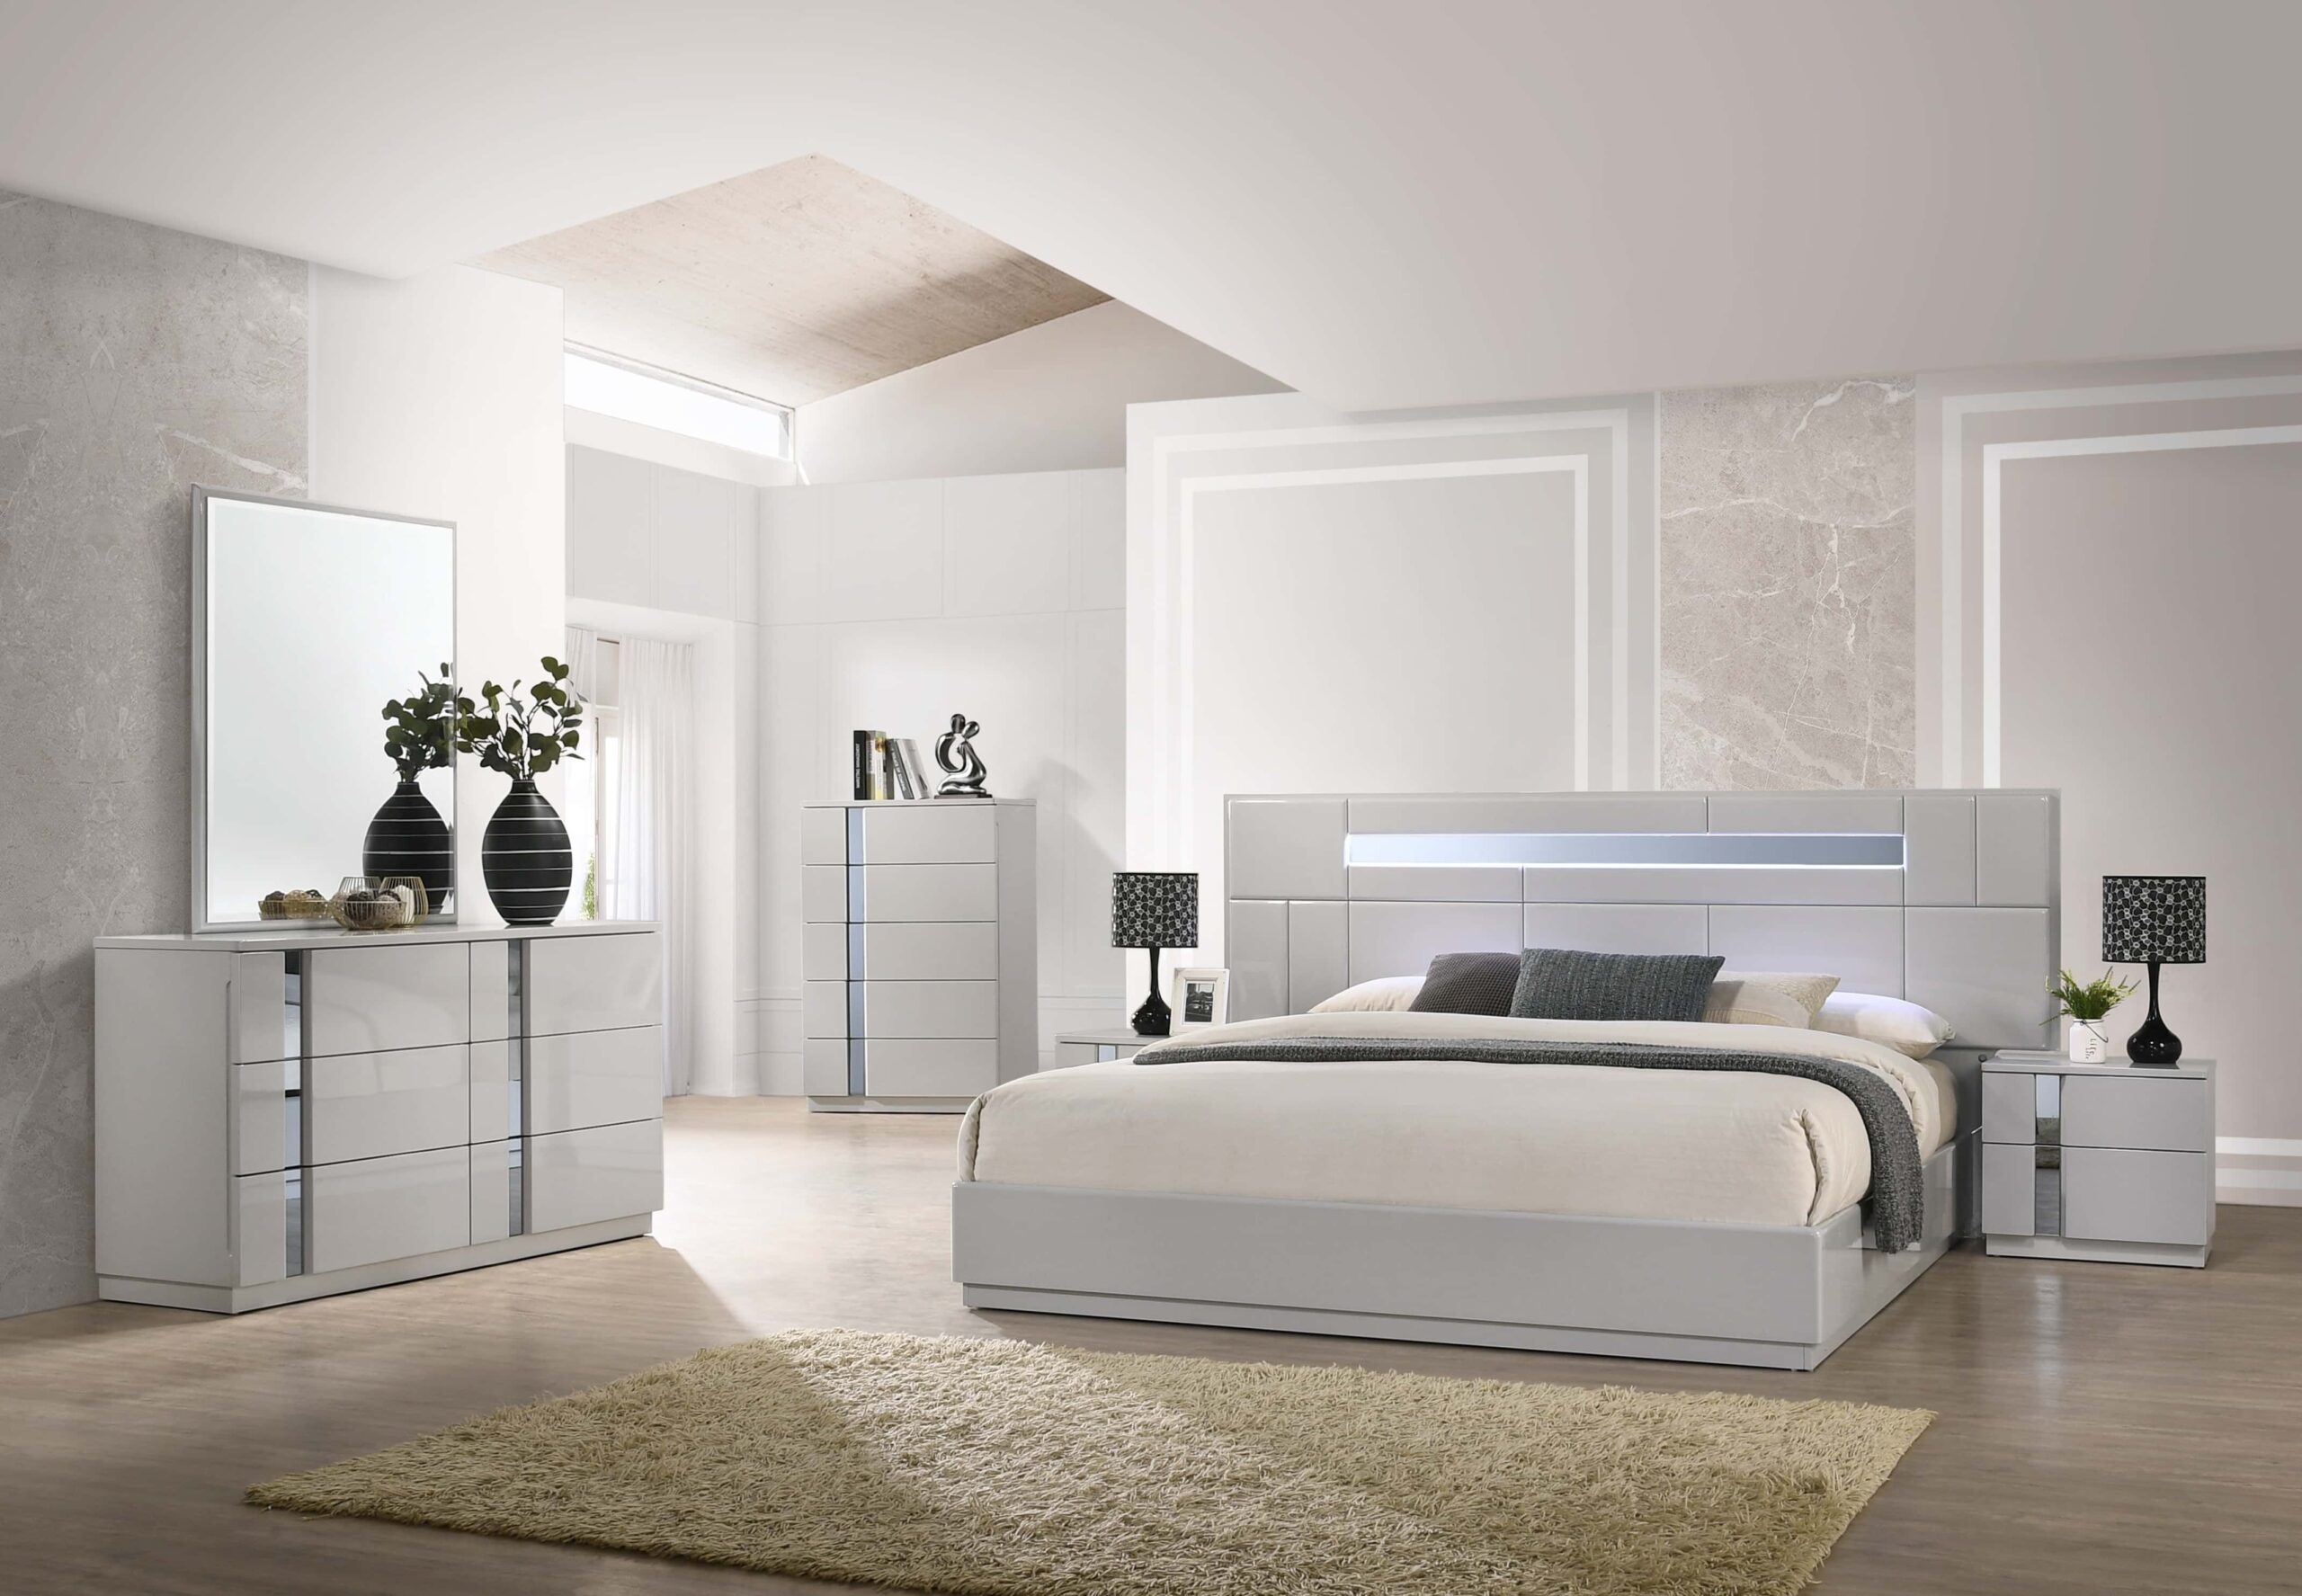 Grey Queen Bedroom Set